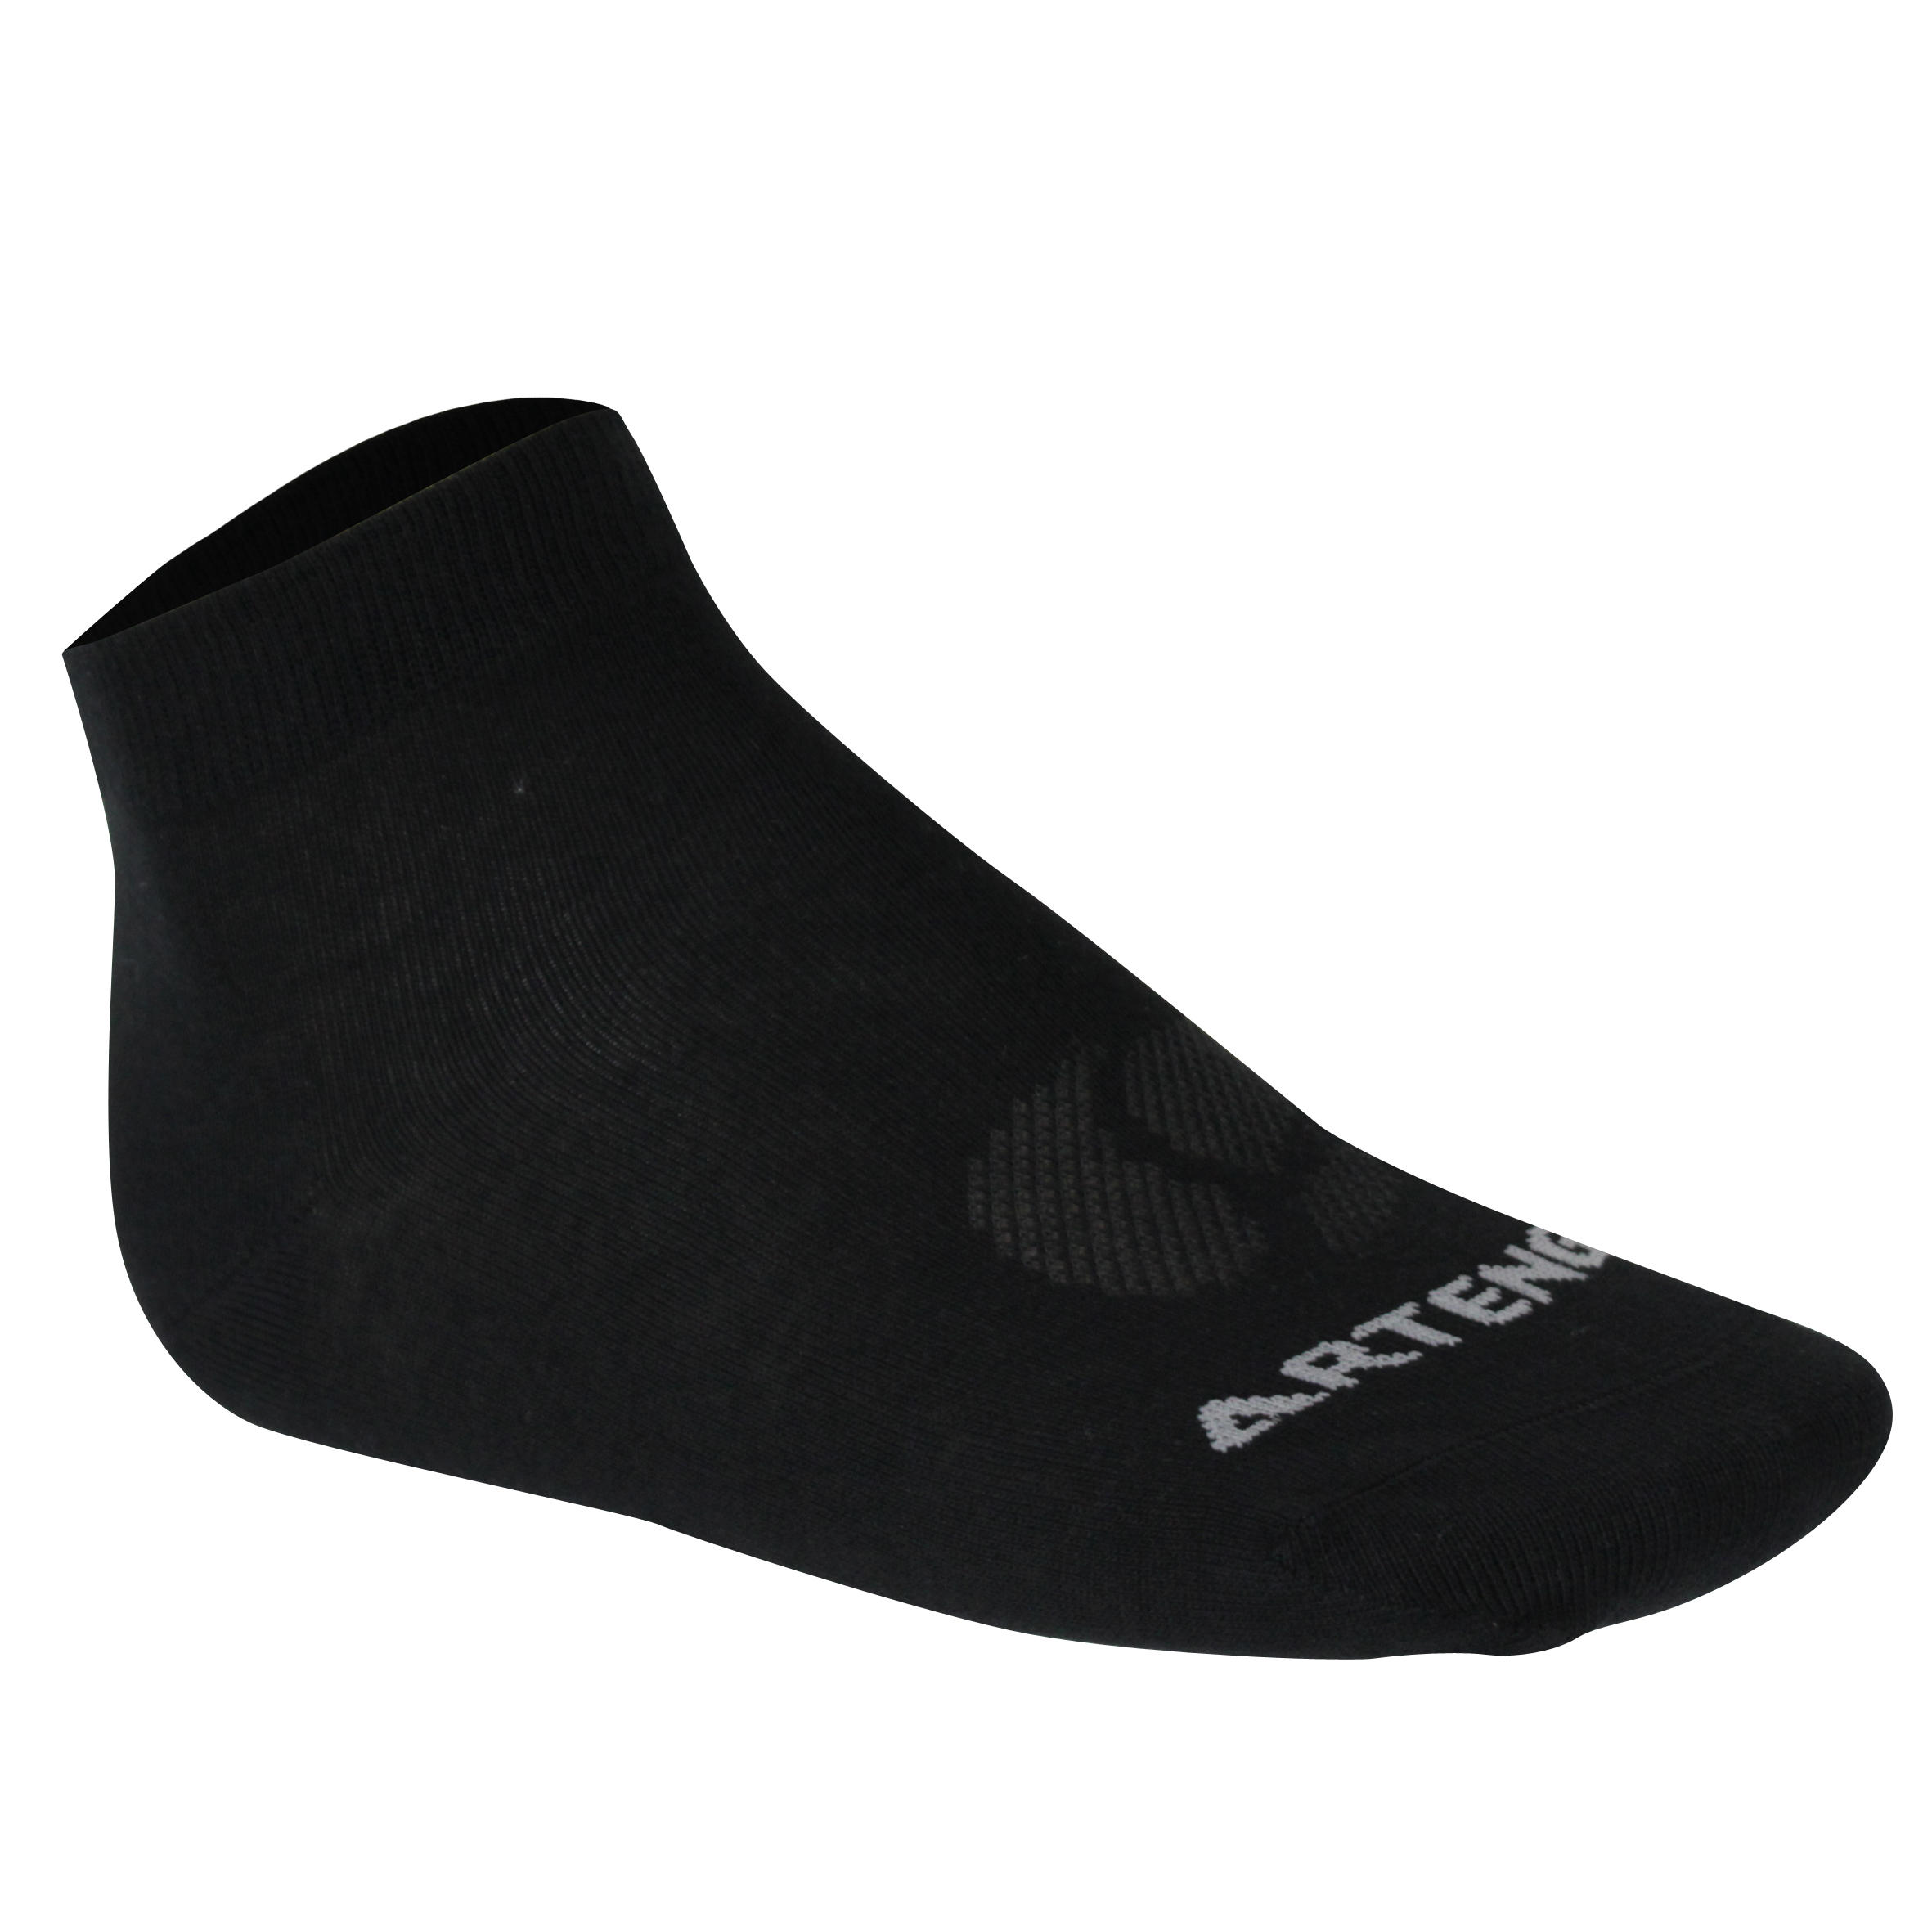 RS 160 Adult Mid Sports Socks Tri-Pack - Black 2/12